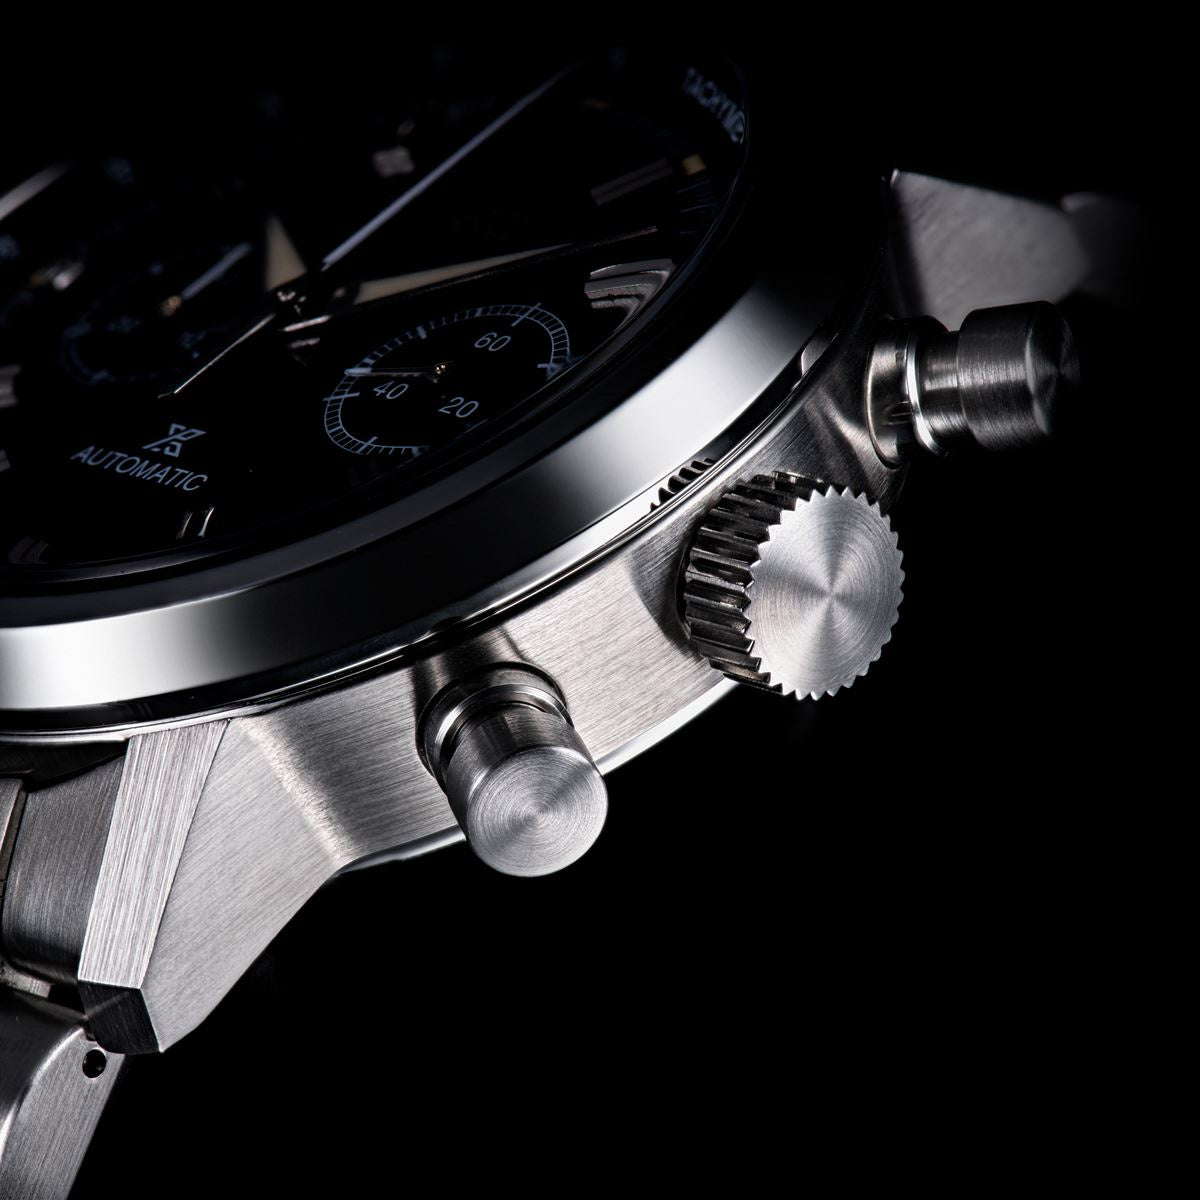 セイコー プロスペックス スピードタイマー SBEC009 腕時計 メンズ 自動巻クロノグラフ 限定モデル SEIKO PROSPEX